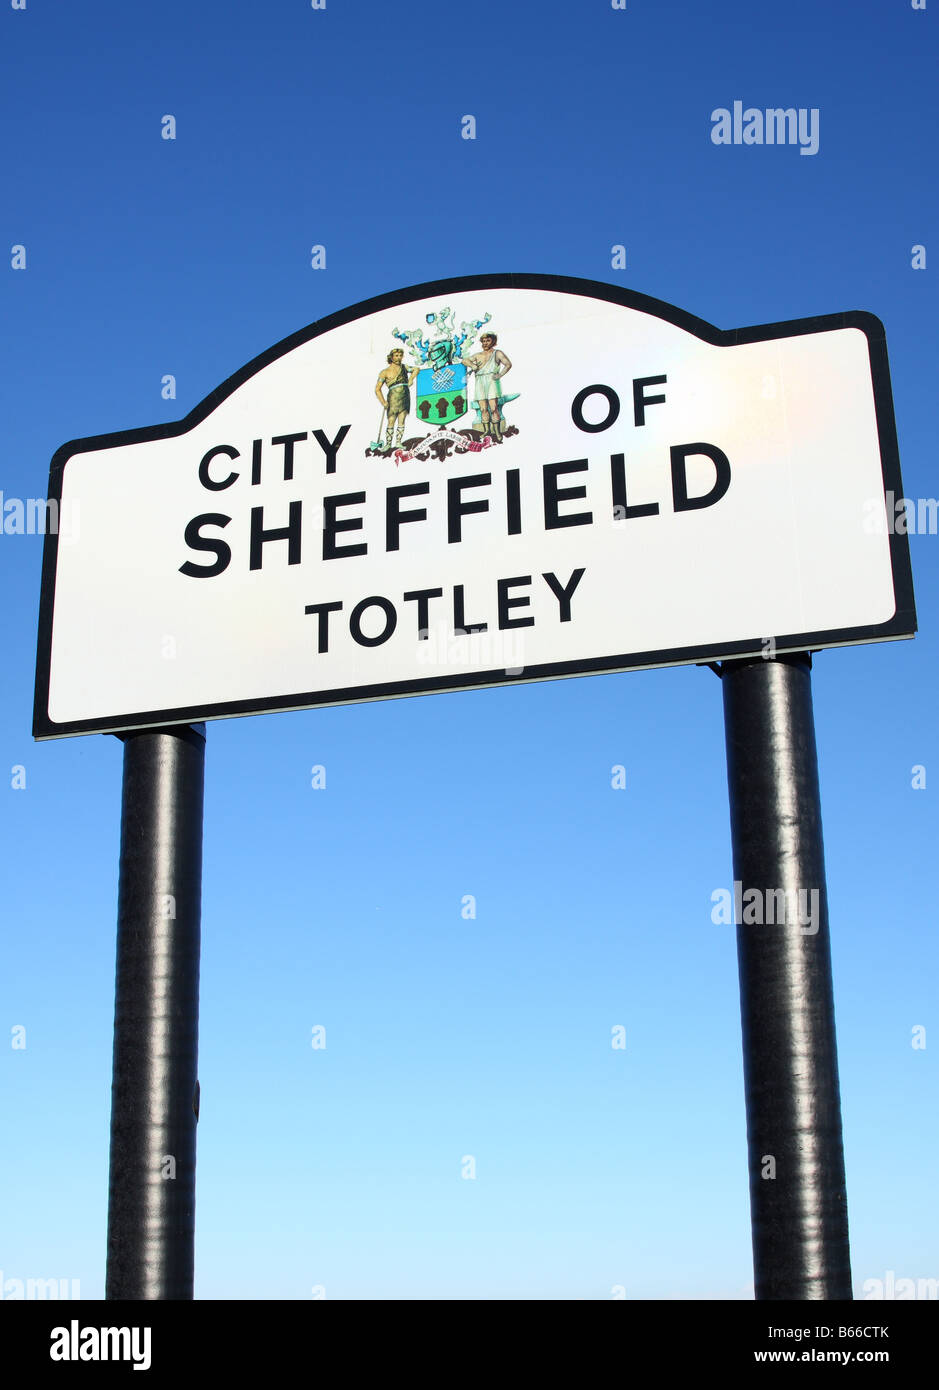 Une ville de Sheffield signe routière dans la banlieue de Totley, Sheffield, South Yorkshire, Angleterre, Royaume-Uni Banque D'Images